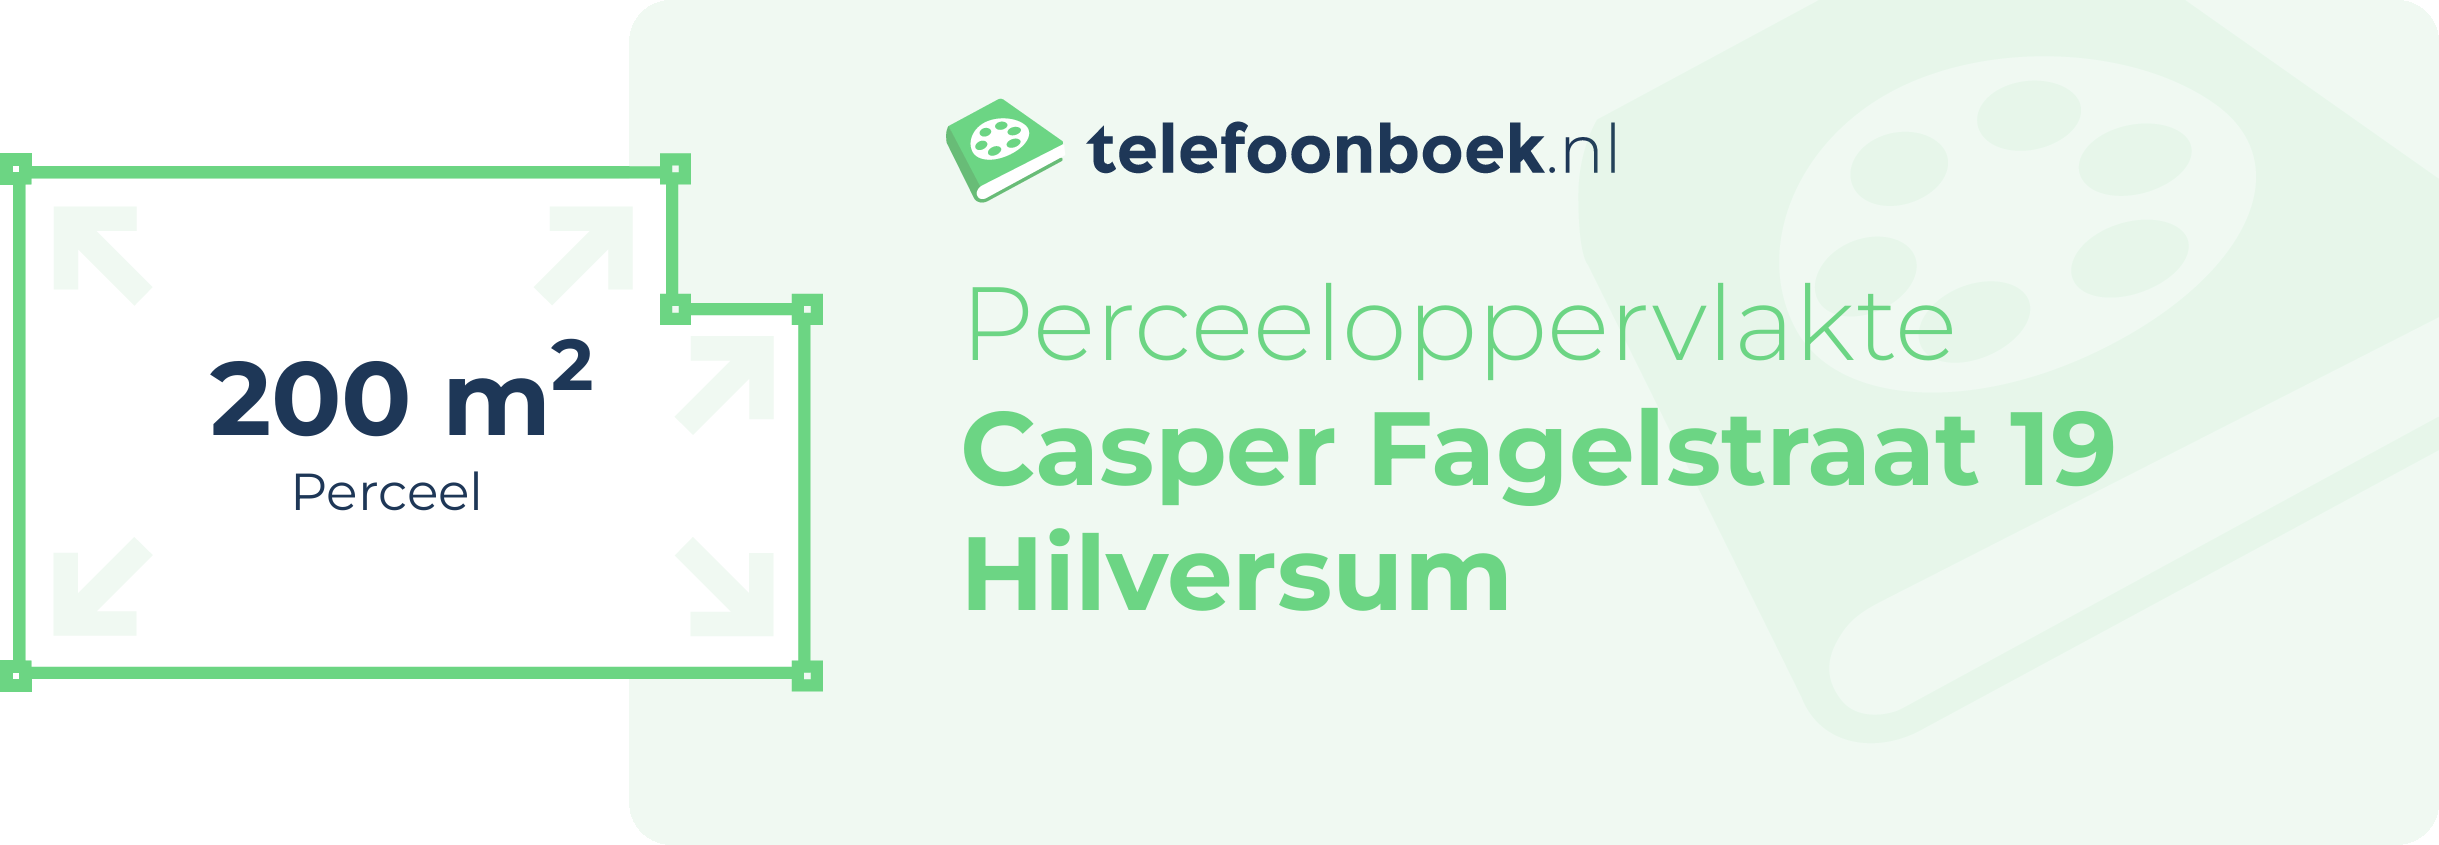 Perceeloppervlakte Casper Fagelstraat 19 Hilversum